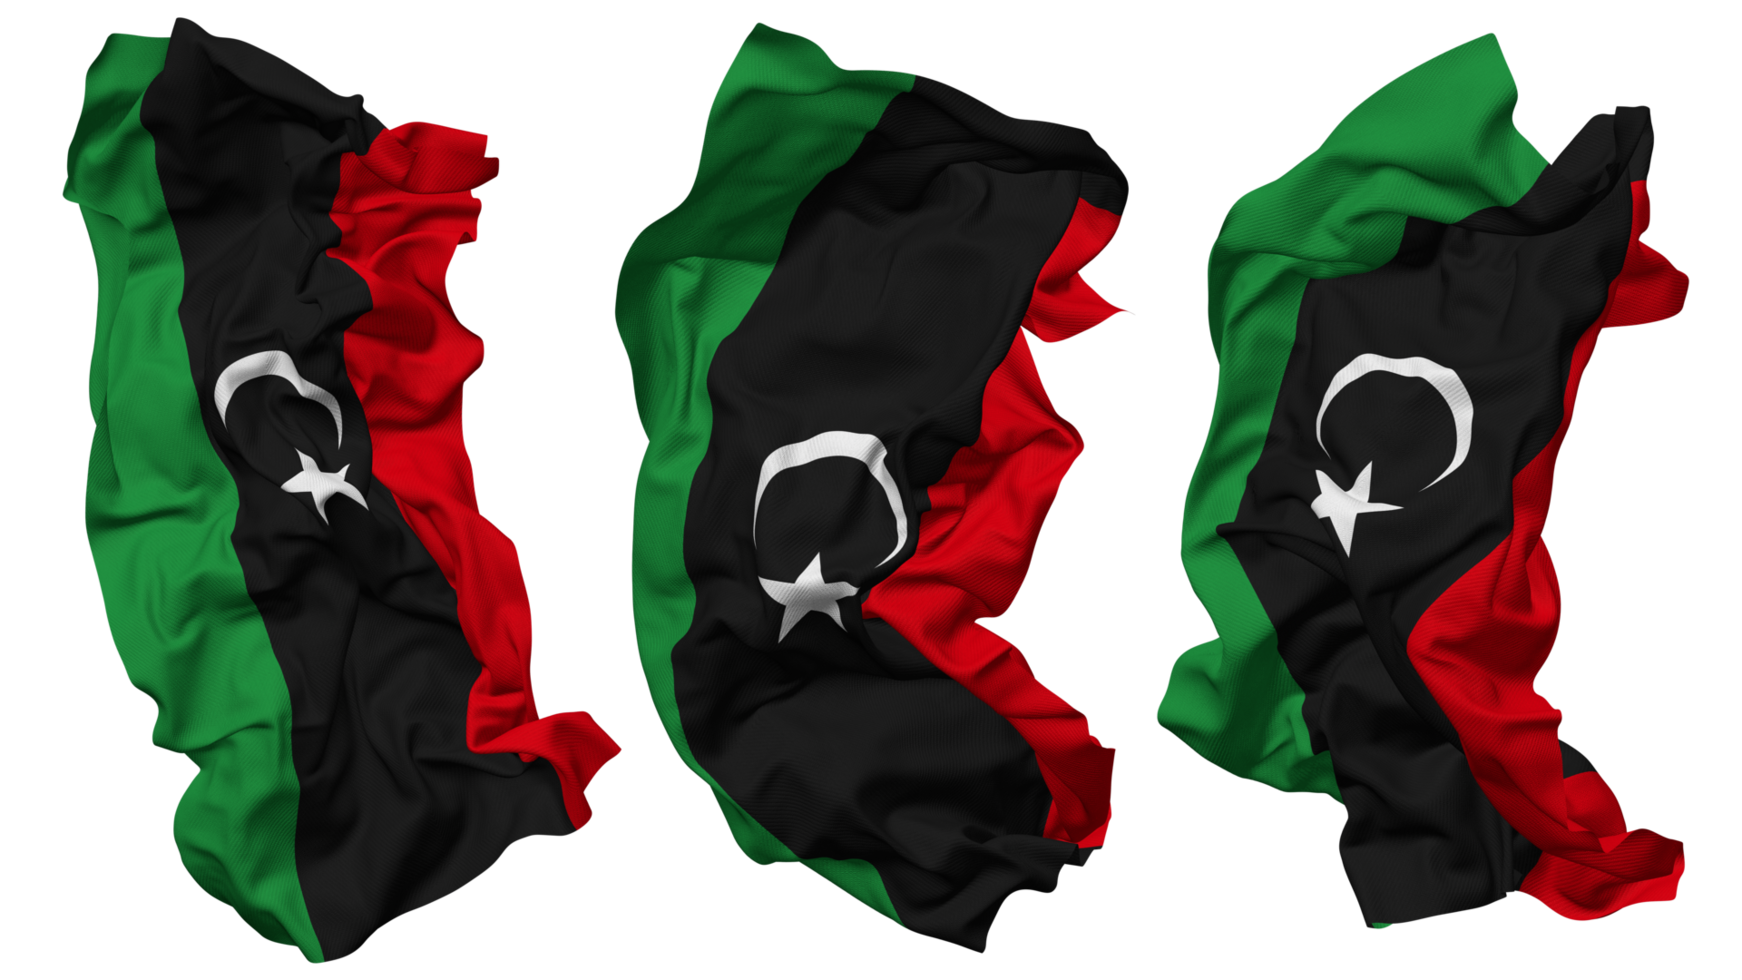 Libia bandera olas aislado en diferente estilos con bache textura, 3d representación png